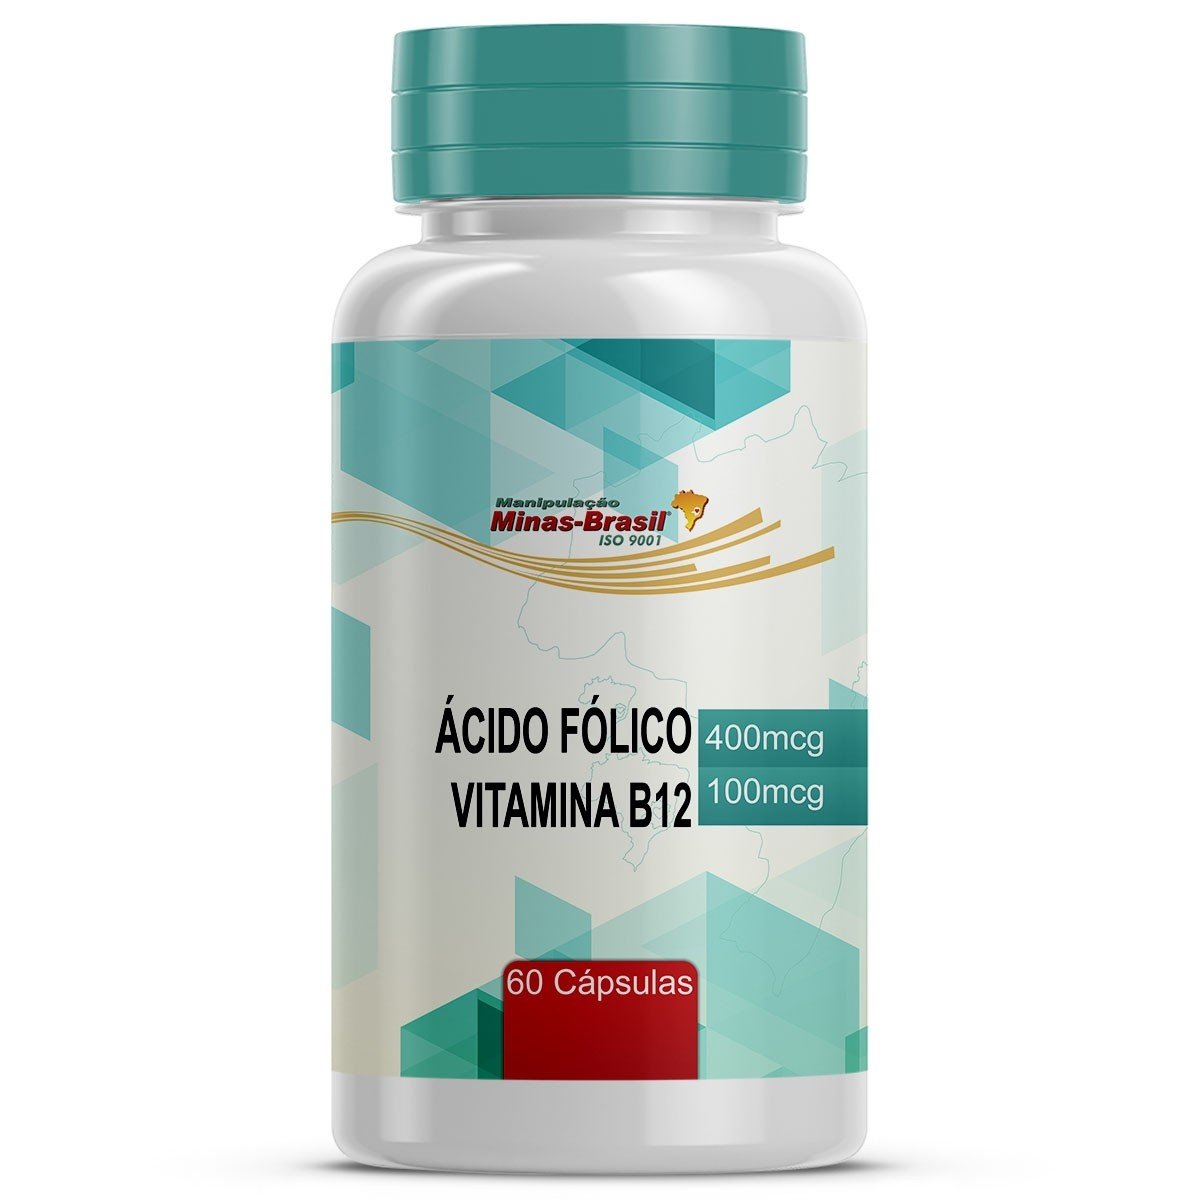 https://www.drogariaminasbrasil.com.br/media/product/cc6/acido-folico-e-vitamina-b12-60-capsulas-a9b.jpg